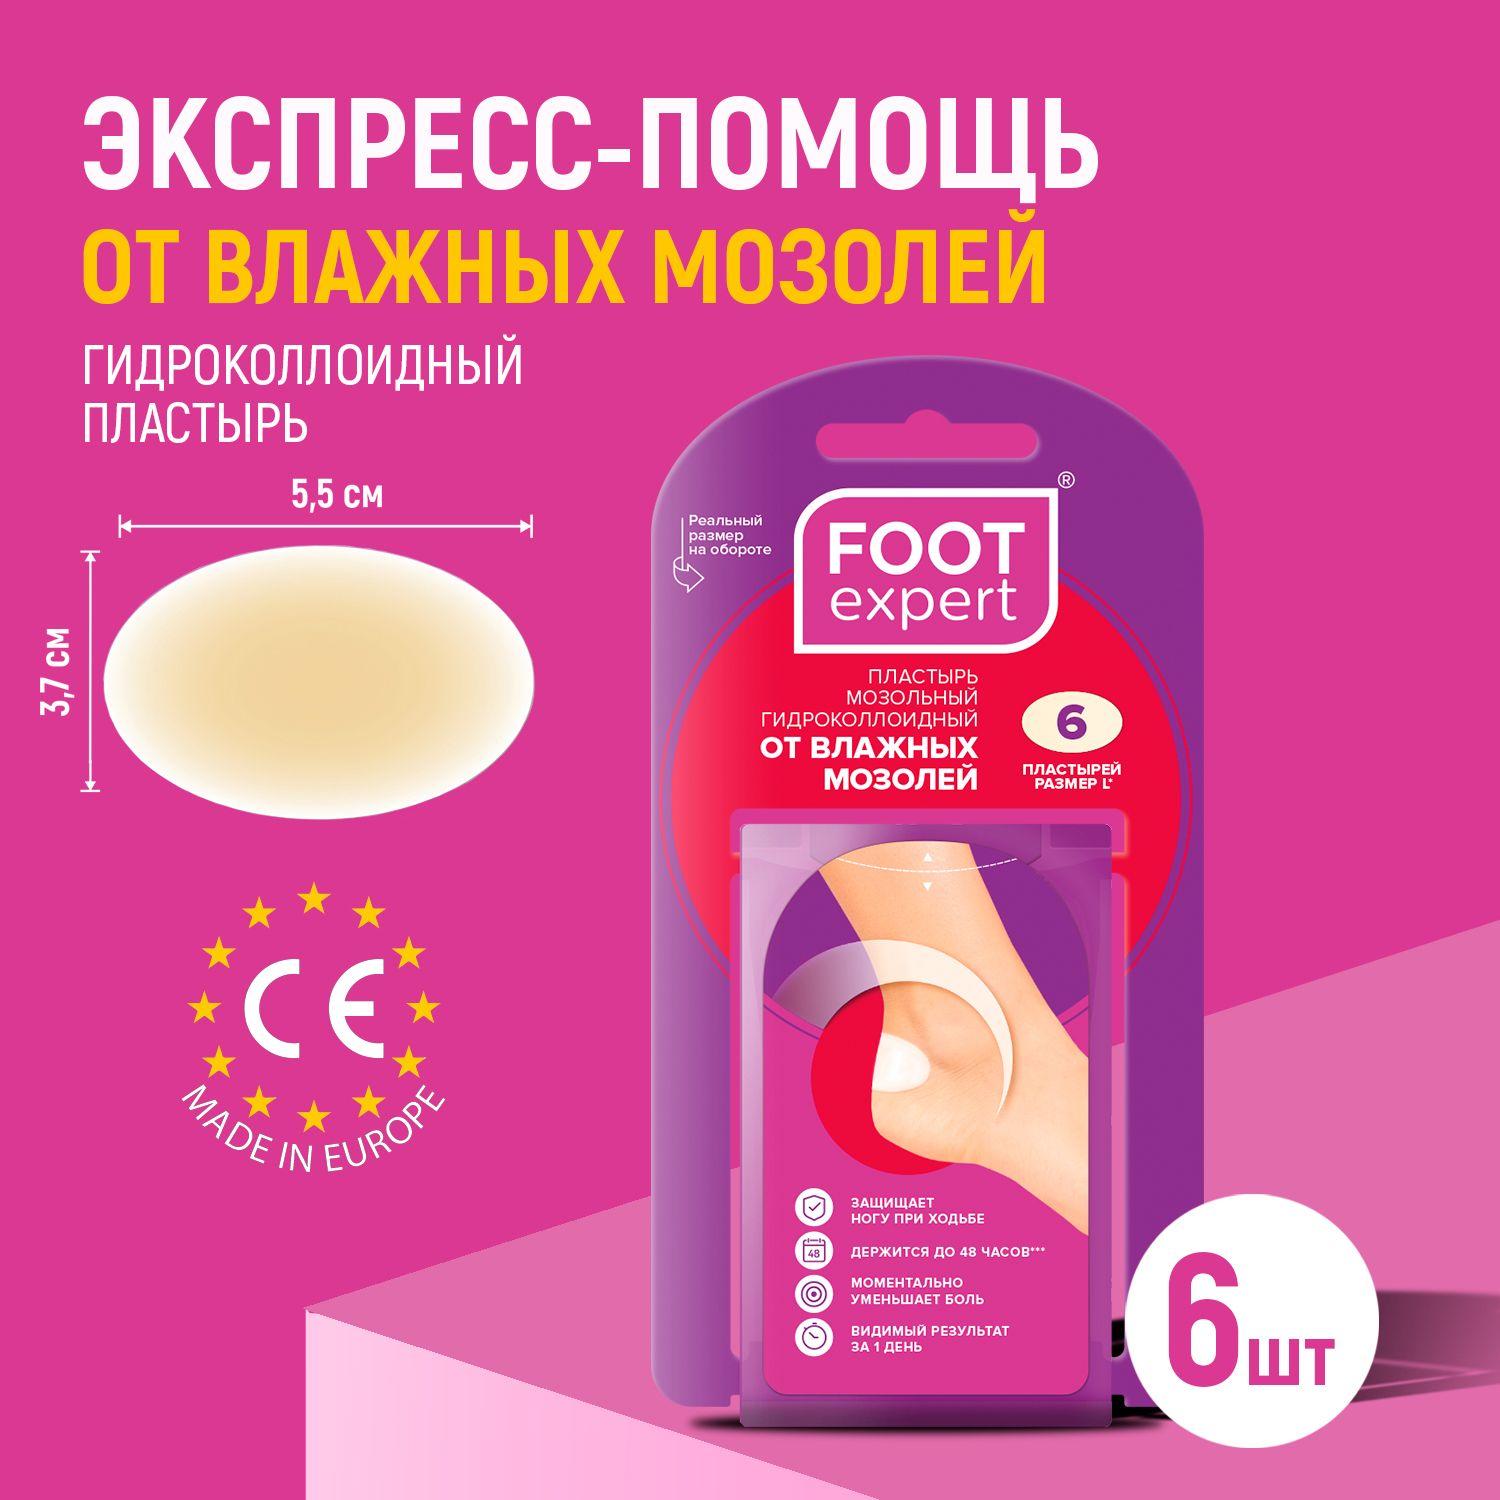 Foot expert | FOOT EXPERT Гидроколлоидный пластырь от влажных мозолей, 3,7х5,5 см, 6 шт, лейкопластырь мозольный для ног